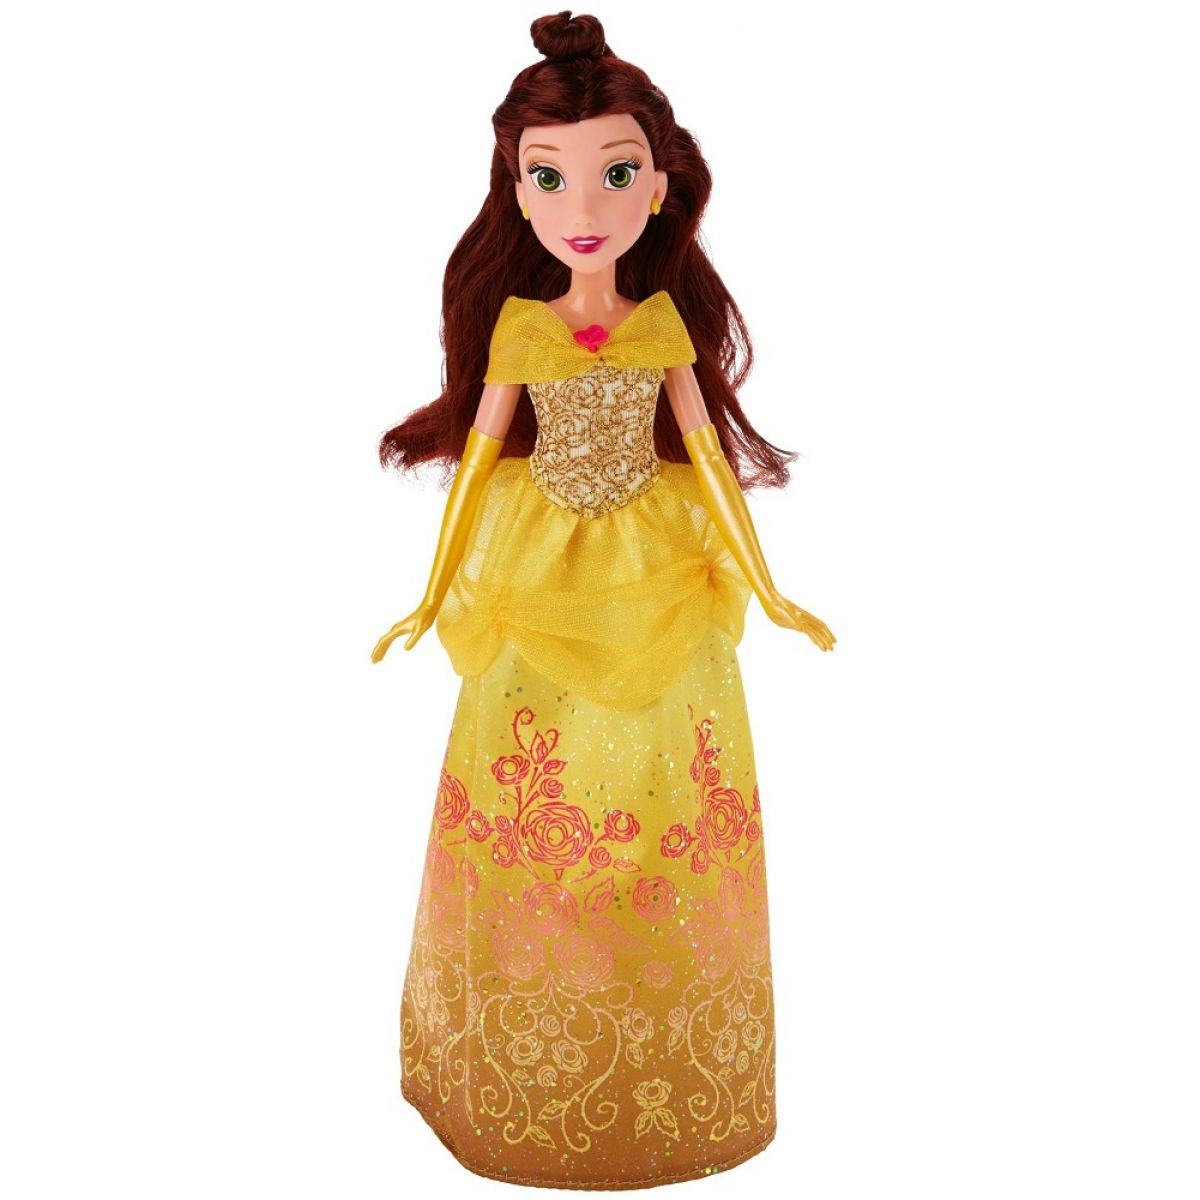 Hasbro Disney Princess Panenka z pohádky III. - Kráska